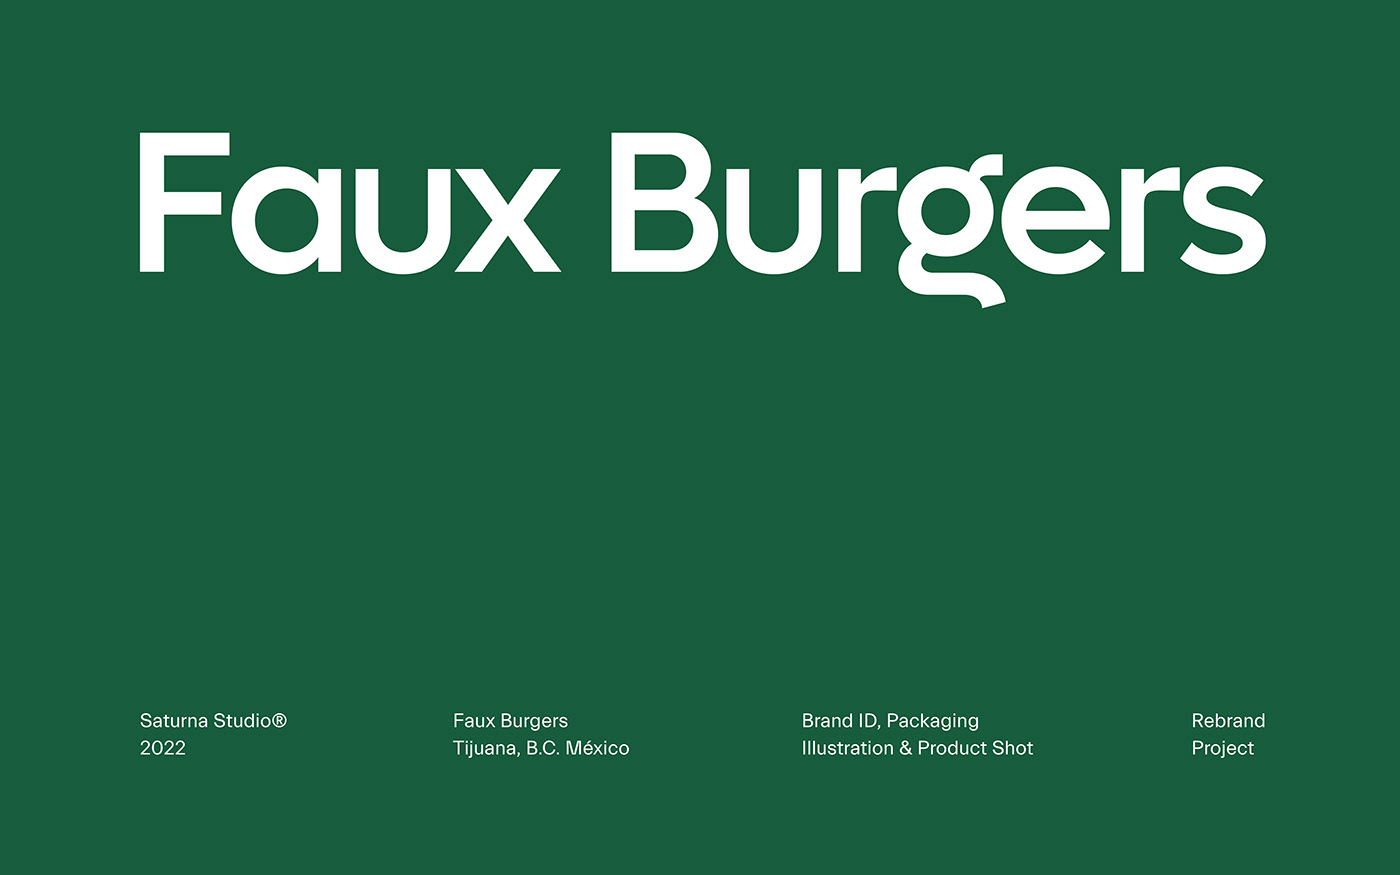 burger Fast food Guadalajara Logotype mexico Packaging rebranding vegan